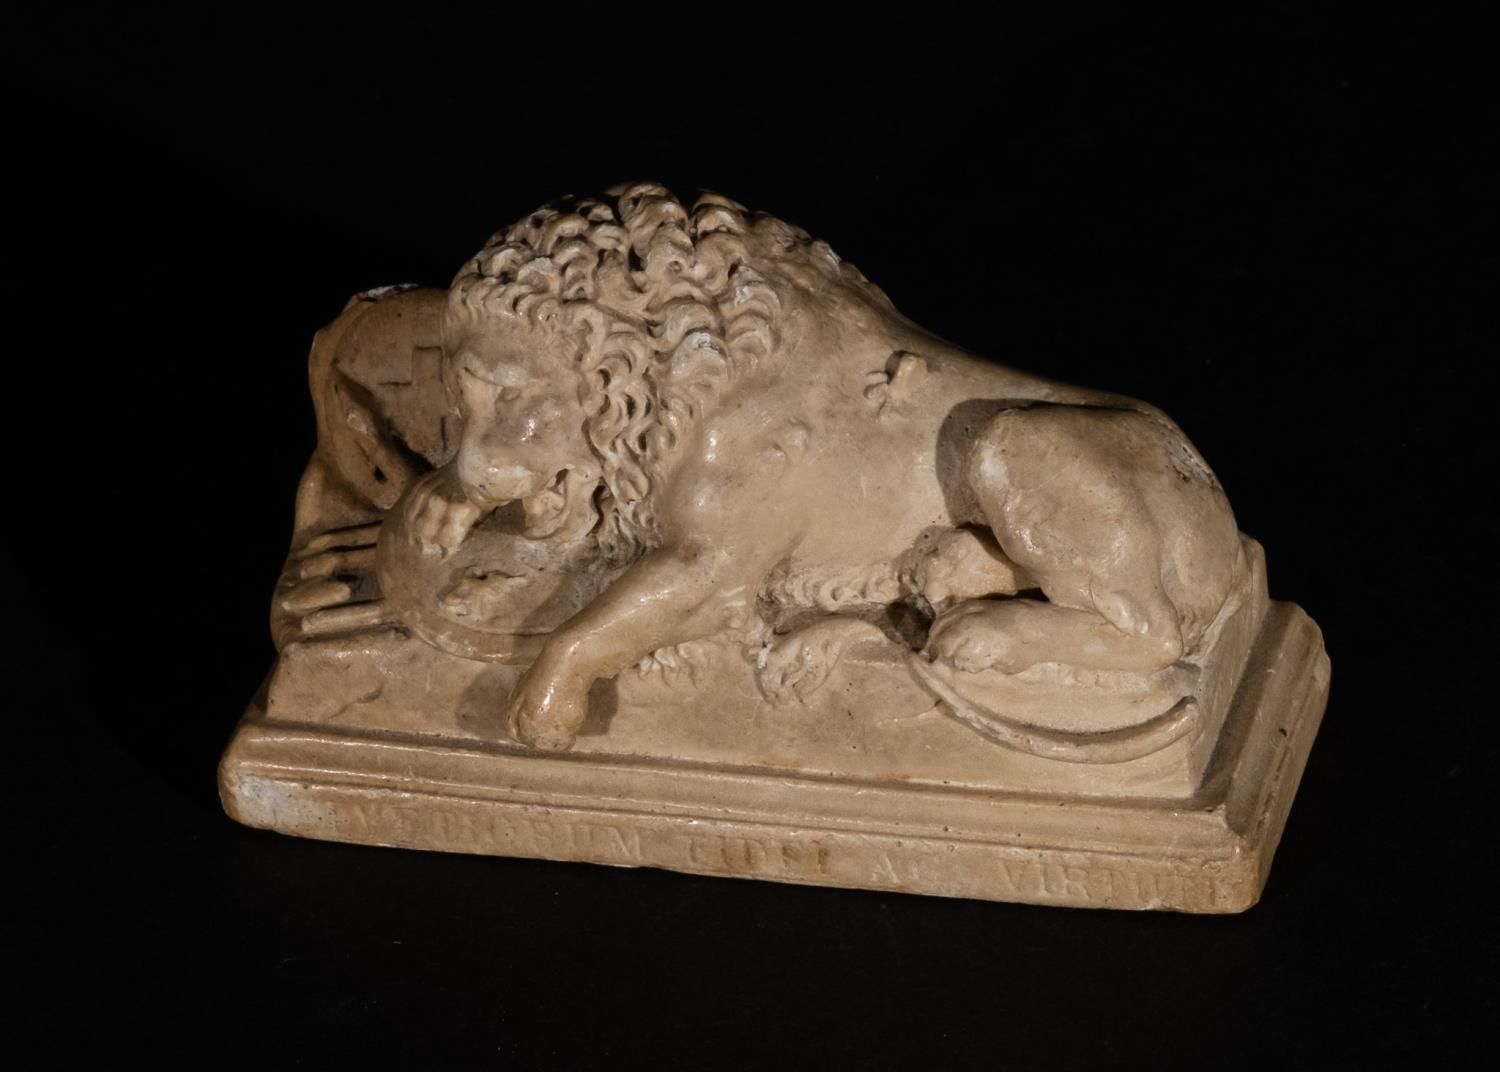 A MEDIEVAL SCULPTURE OF A RECLINING LION SCULPTURE MEDIEVALE D'UN LION RECULÉ
 
&hellip;